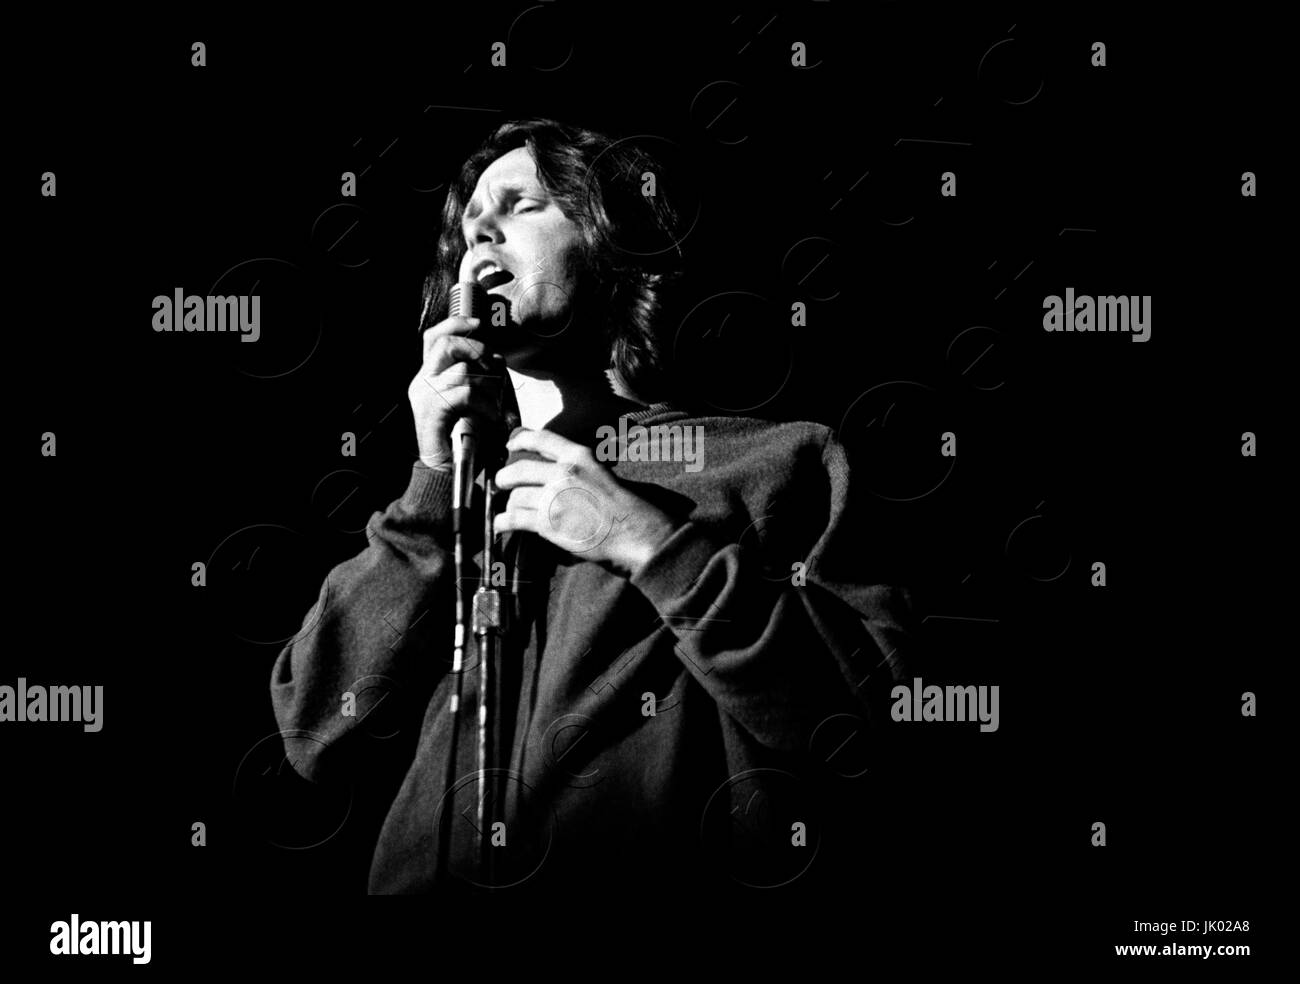 Jim Morrison des portes d'effectuer à l'Arène de Boston à Boston, MA, le 10 avril 1970. Au cours de ce concert, Jim Morrison a demandé à l'audience si 'quelqu'un veut voir mon gentitals... ?" et a été traîné hors scène par Ray Manzarek. ** Les taux plus élevés s'appliquent ** APPEL À NÉGOCIER ** JAMAIS publié des photos ** © Peter Tarnoff / MediaPunch Banque D'Images